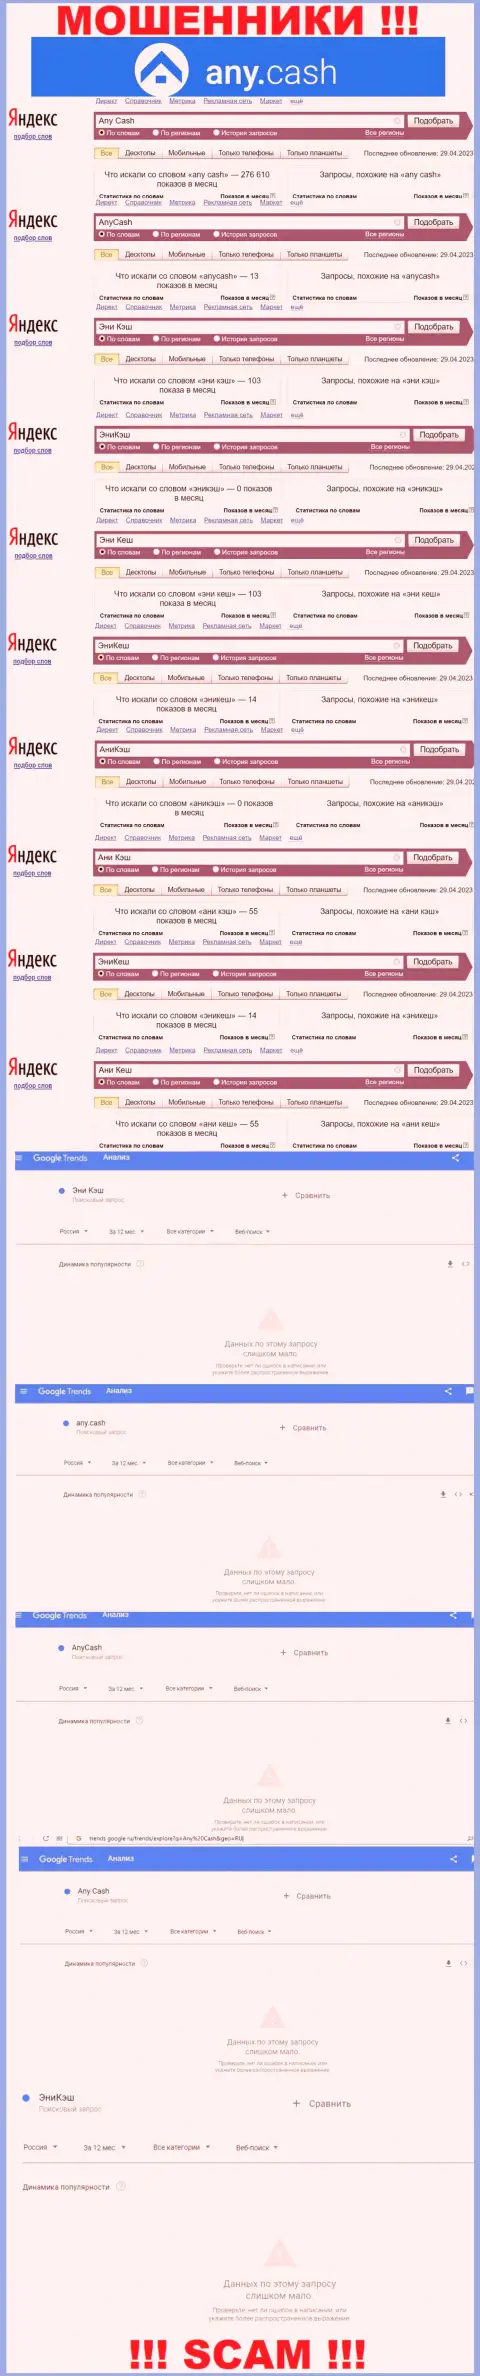 Скриншот статистических данных запросов по противозаконно действующей организации АниКеш